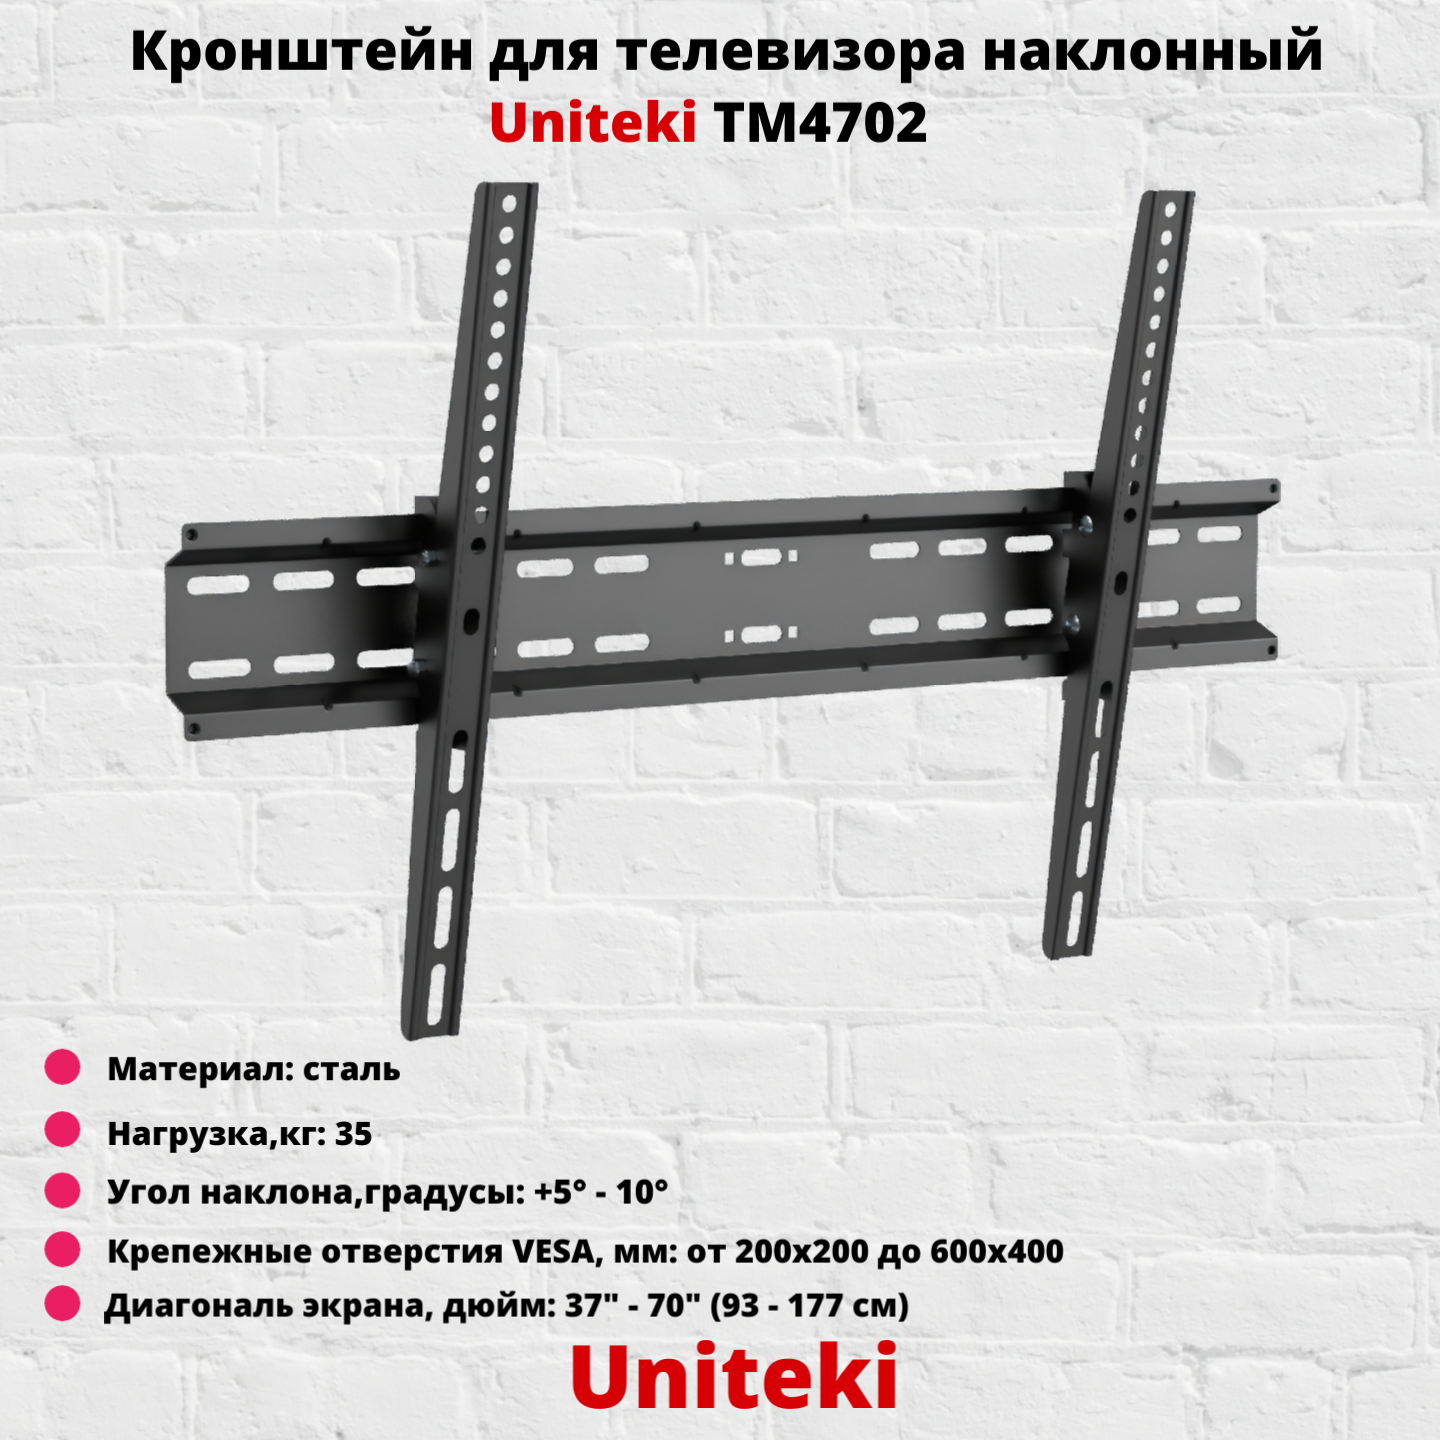 Кронштейн для телевизора на стену наклонный с диагональю 37"-70" UniTeki TM4702B, черный